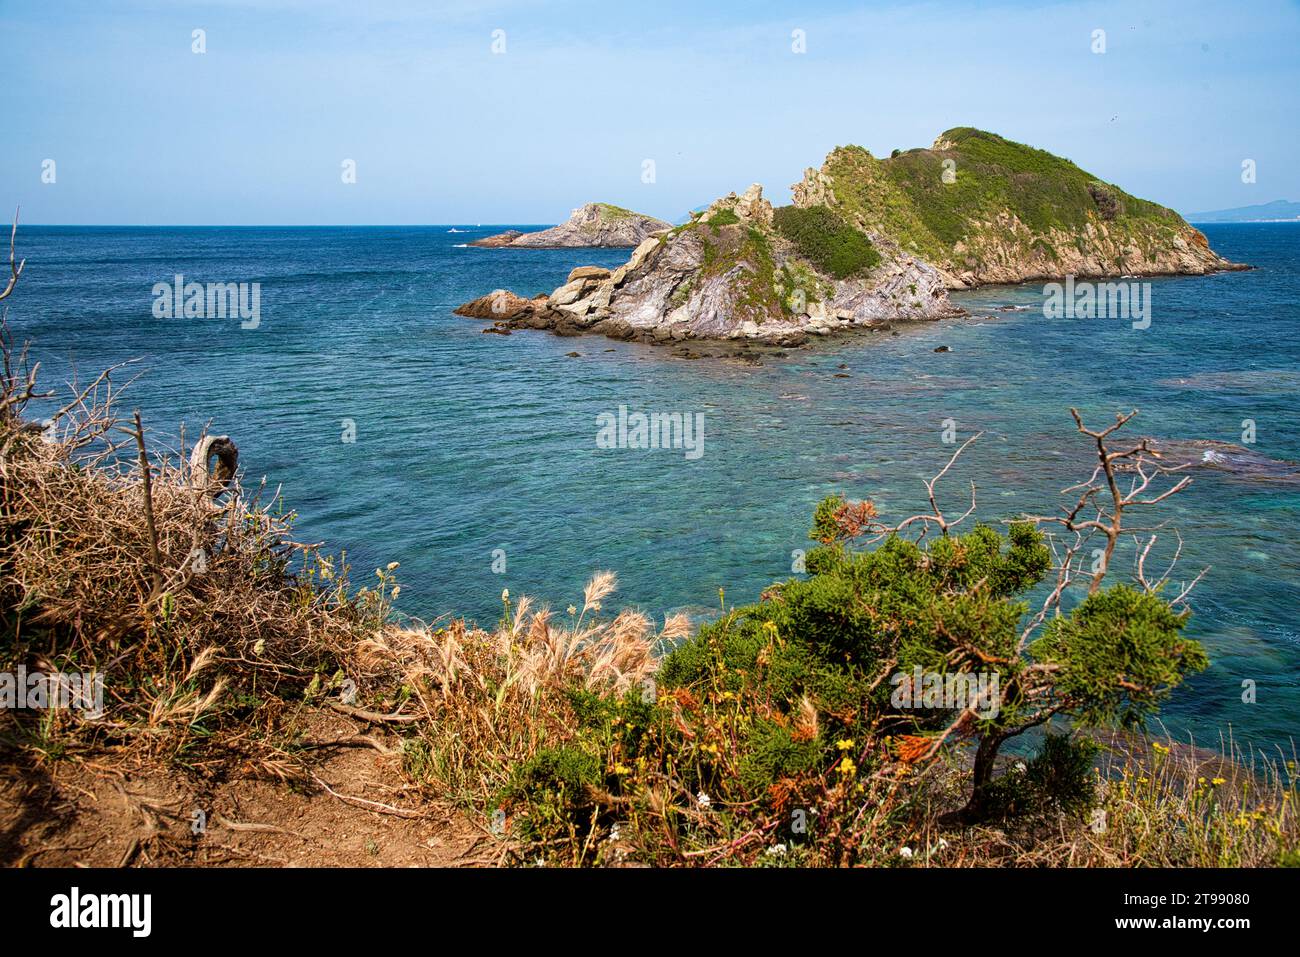 le bord de mer dans la partie ouest de la presquile de Giens appartenant au parc national de Port-cros avec ses criques ses ilots ses plages sa Nature Stockfoto